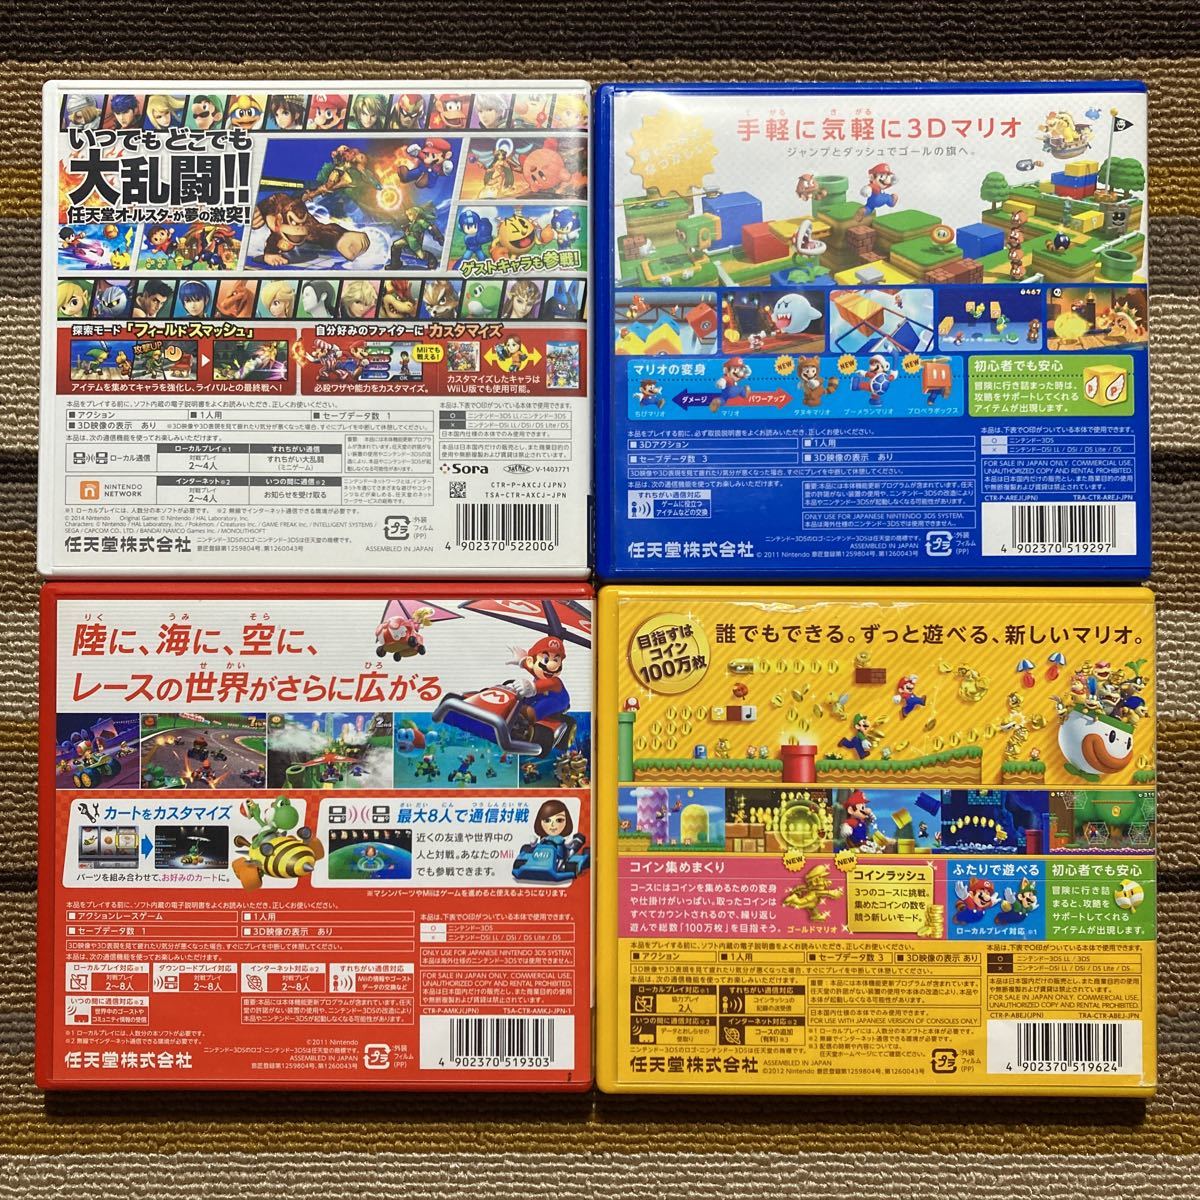 3DS 大乱闘スマッシュブラザーズ スーパーマリオ3Dランド Newスーパーマリオブラザーズ2 マリオカート7 